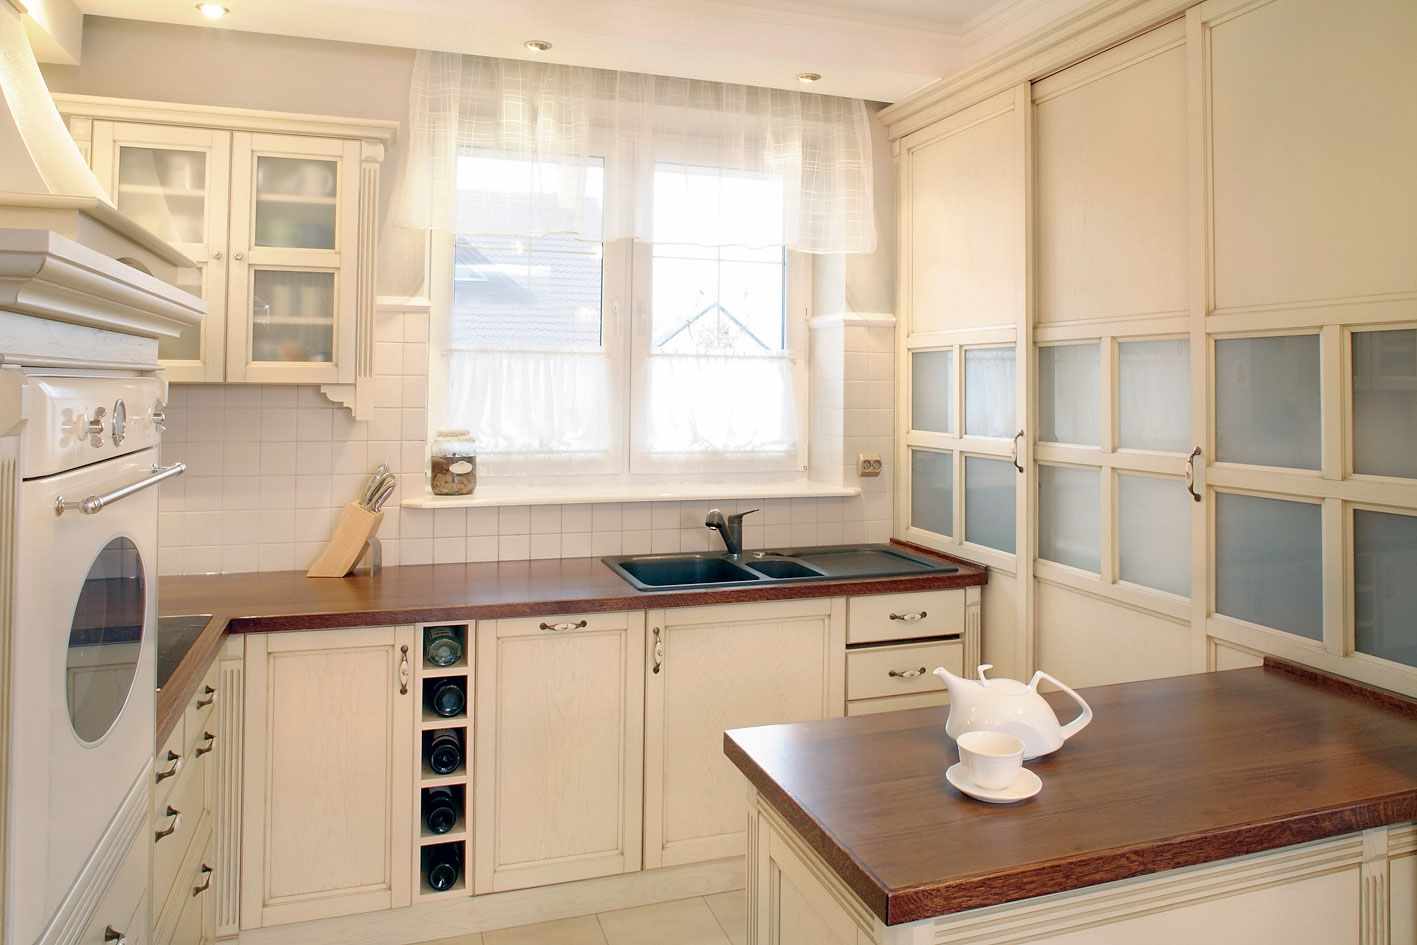 egy gyönyörű stílusú ablak elképzelése a konyhában